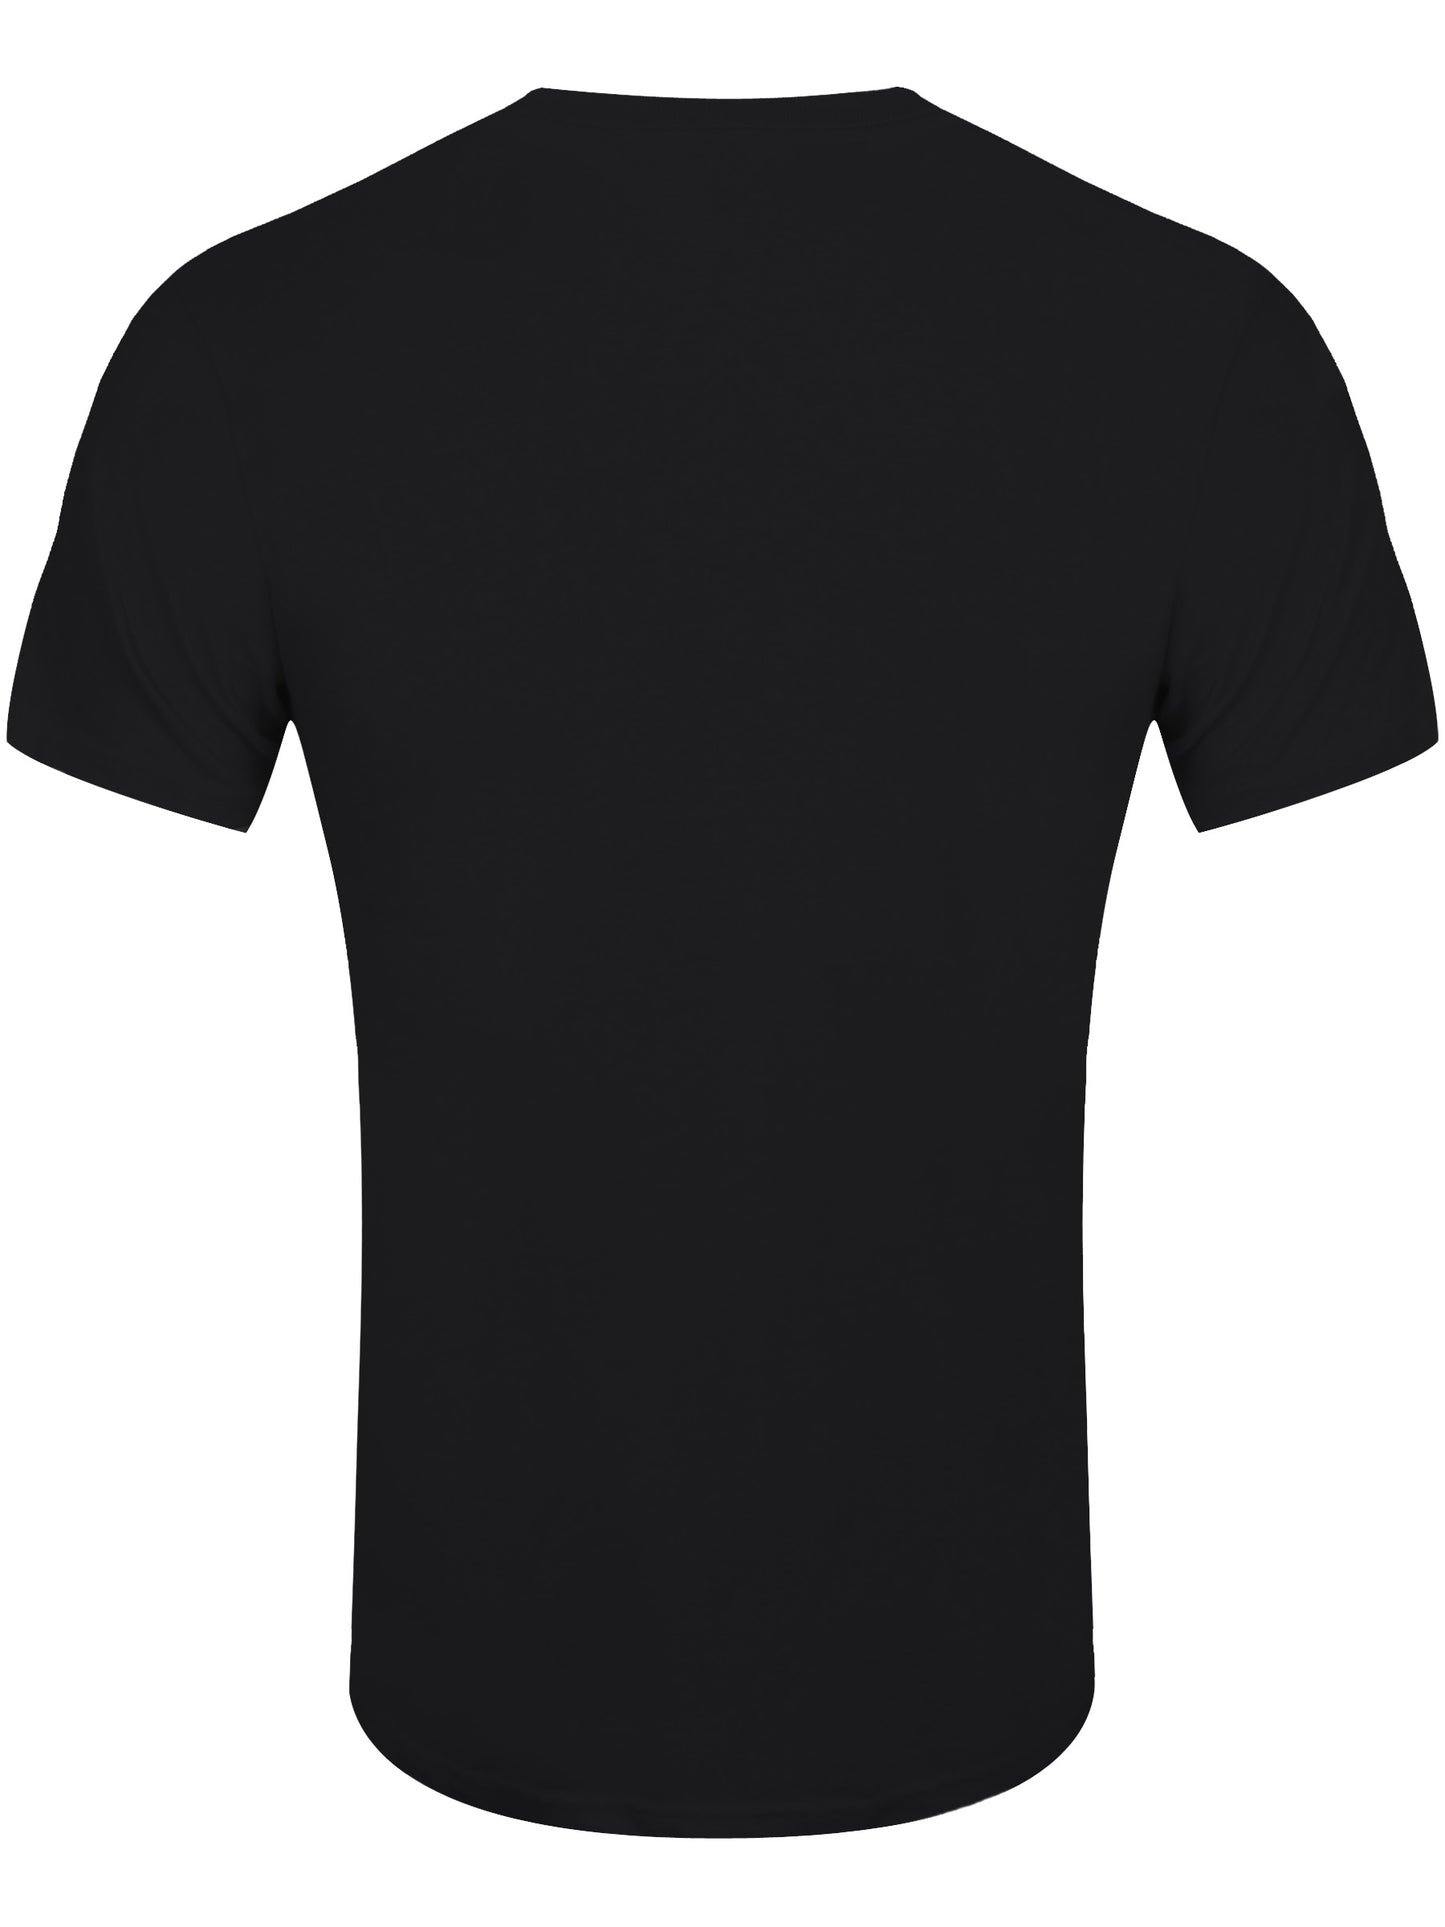 Misfits Fiend Club Men's Black T-Shirt